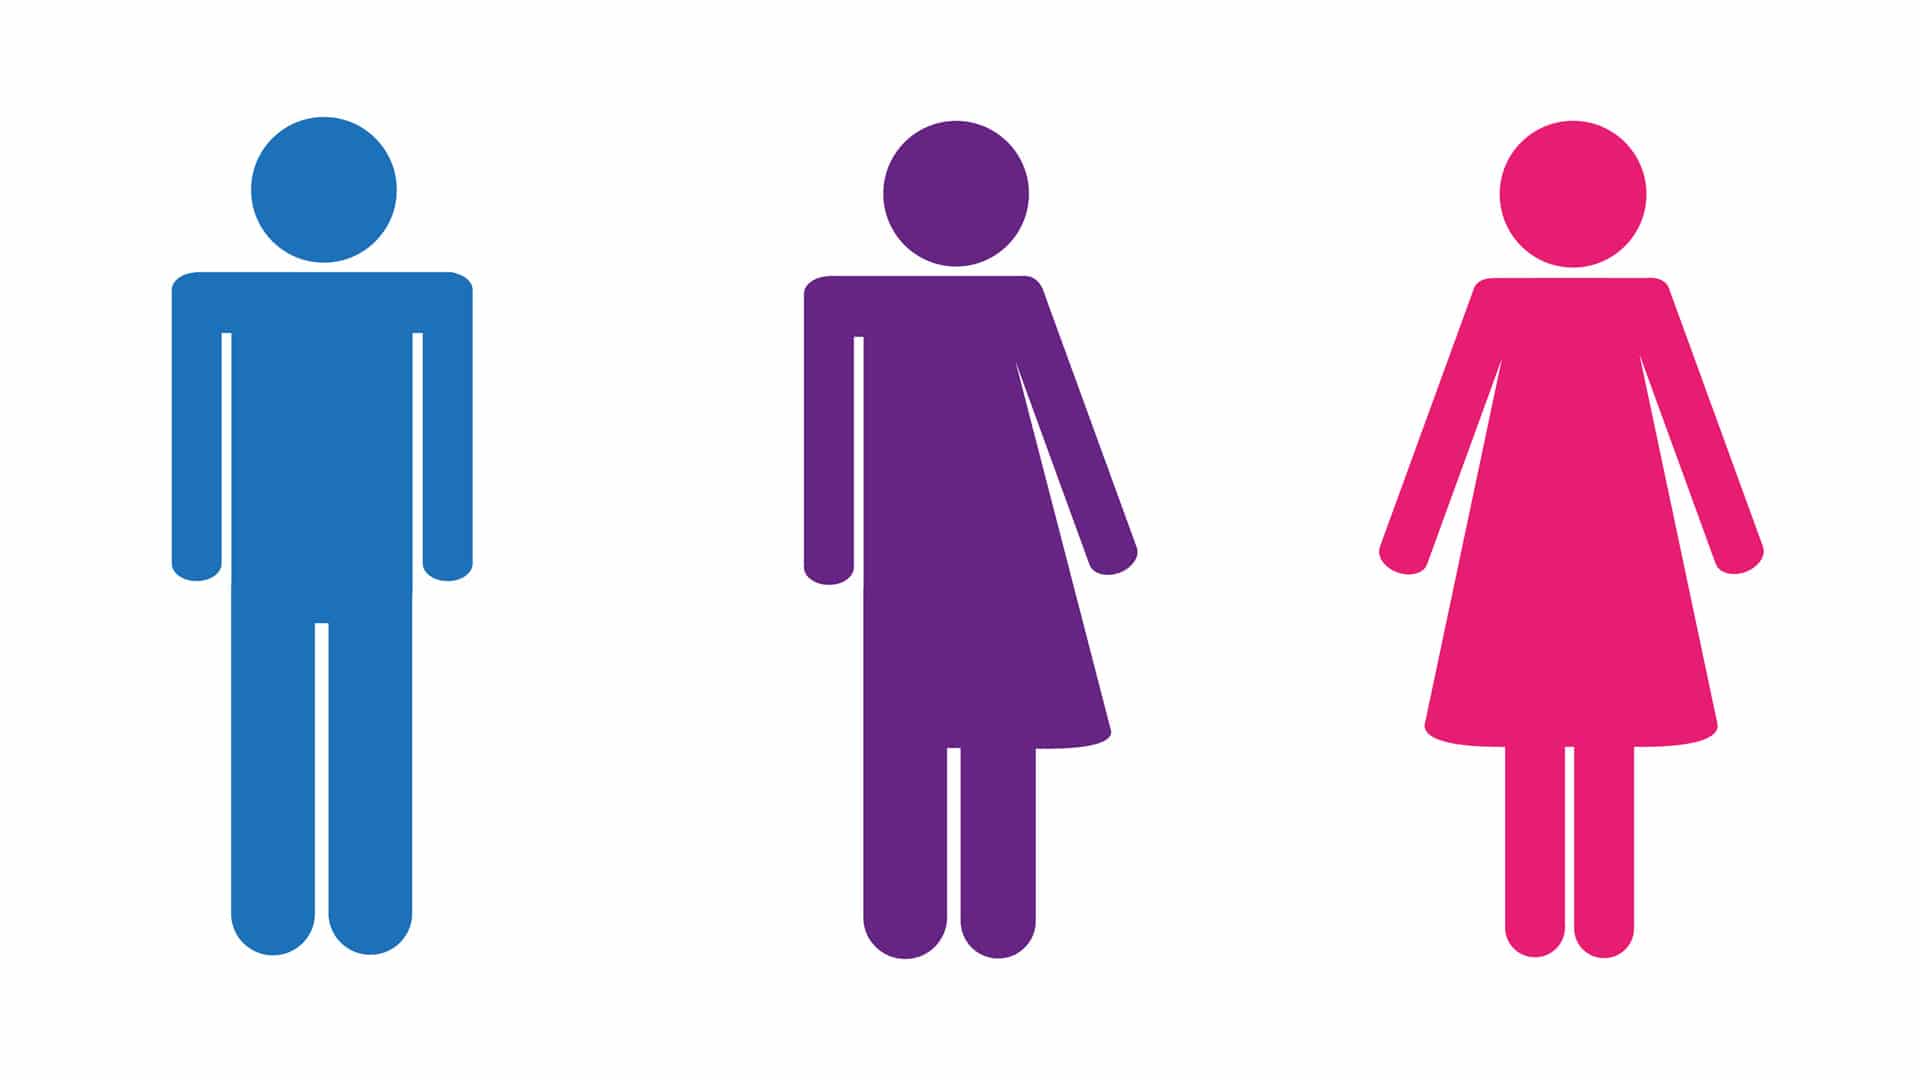 Seit Dezember 2018 können Personen gegen Vorlage eines Attests den Geschlechtseintrag „divers“ im Personenstandsregister eintragen lassen